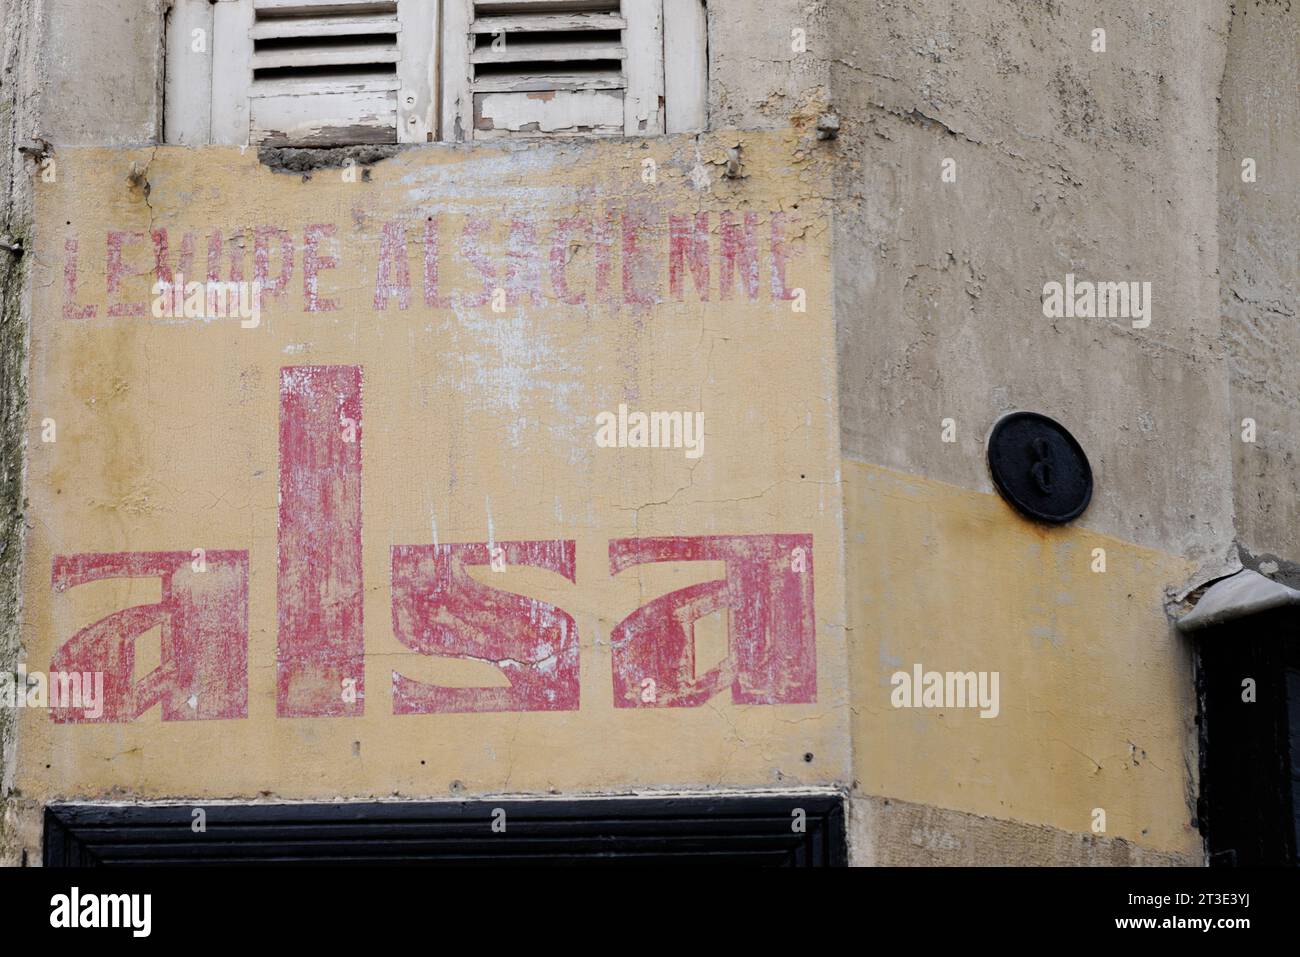 Bordeaux , France - 10 19 2023 : alsa levure alsacienne logo texte et signe de marque vieille peinture publicitaire sur mur ville rue vintage Banque D'Images